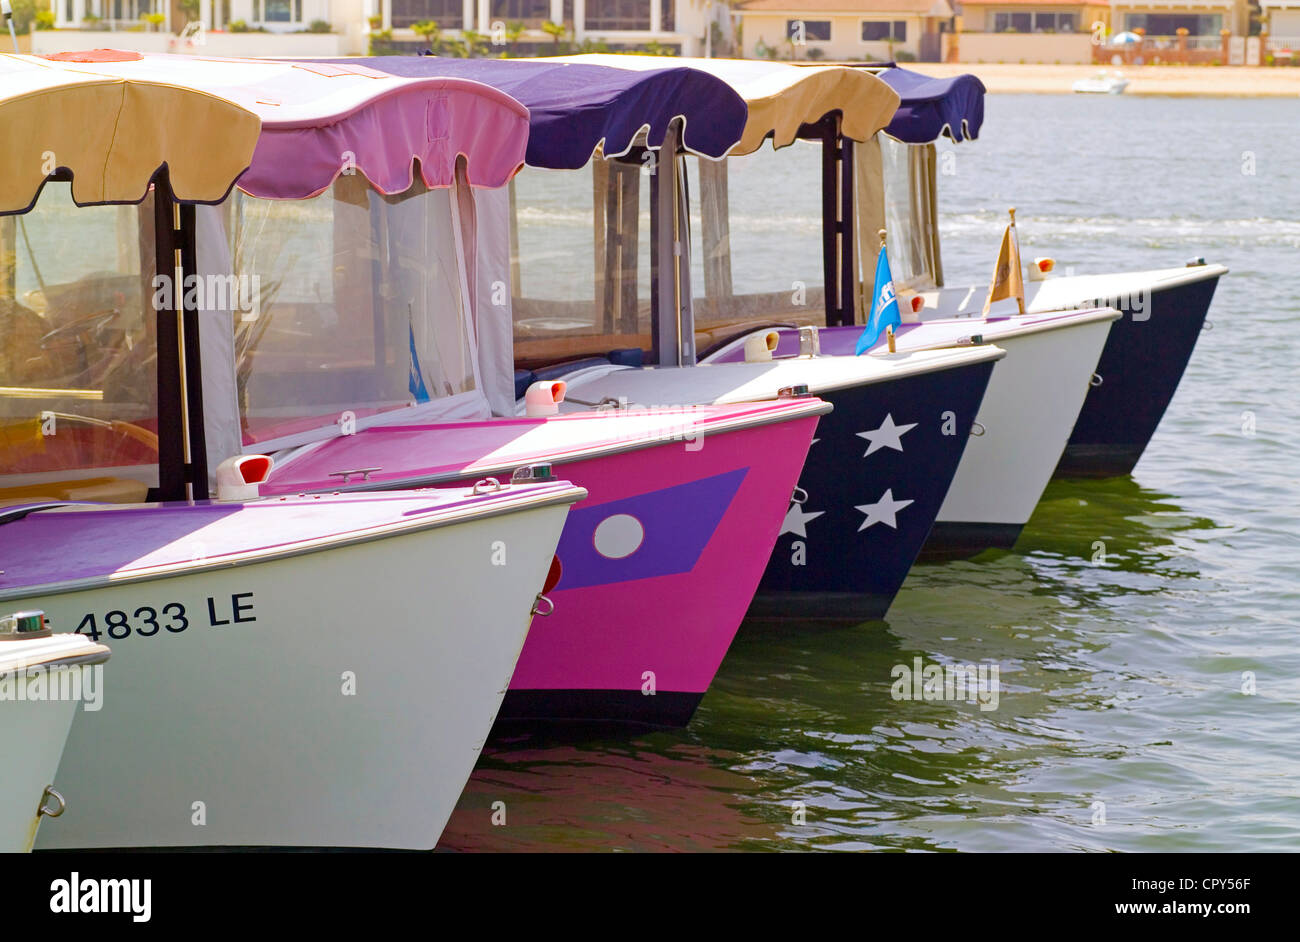 Niedlich und überdachten "Duffy Elektroboote" mietbar für selbst-geführte Ausflüge rund um den Hafen von Newport in Newport Beach in Süd-Kalifornien, USA. Stockfoto